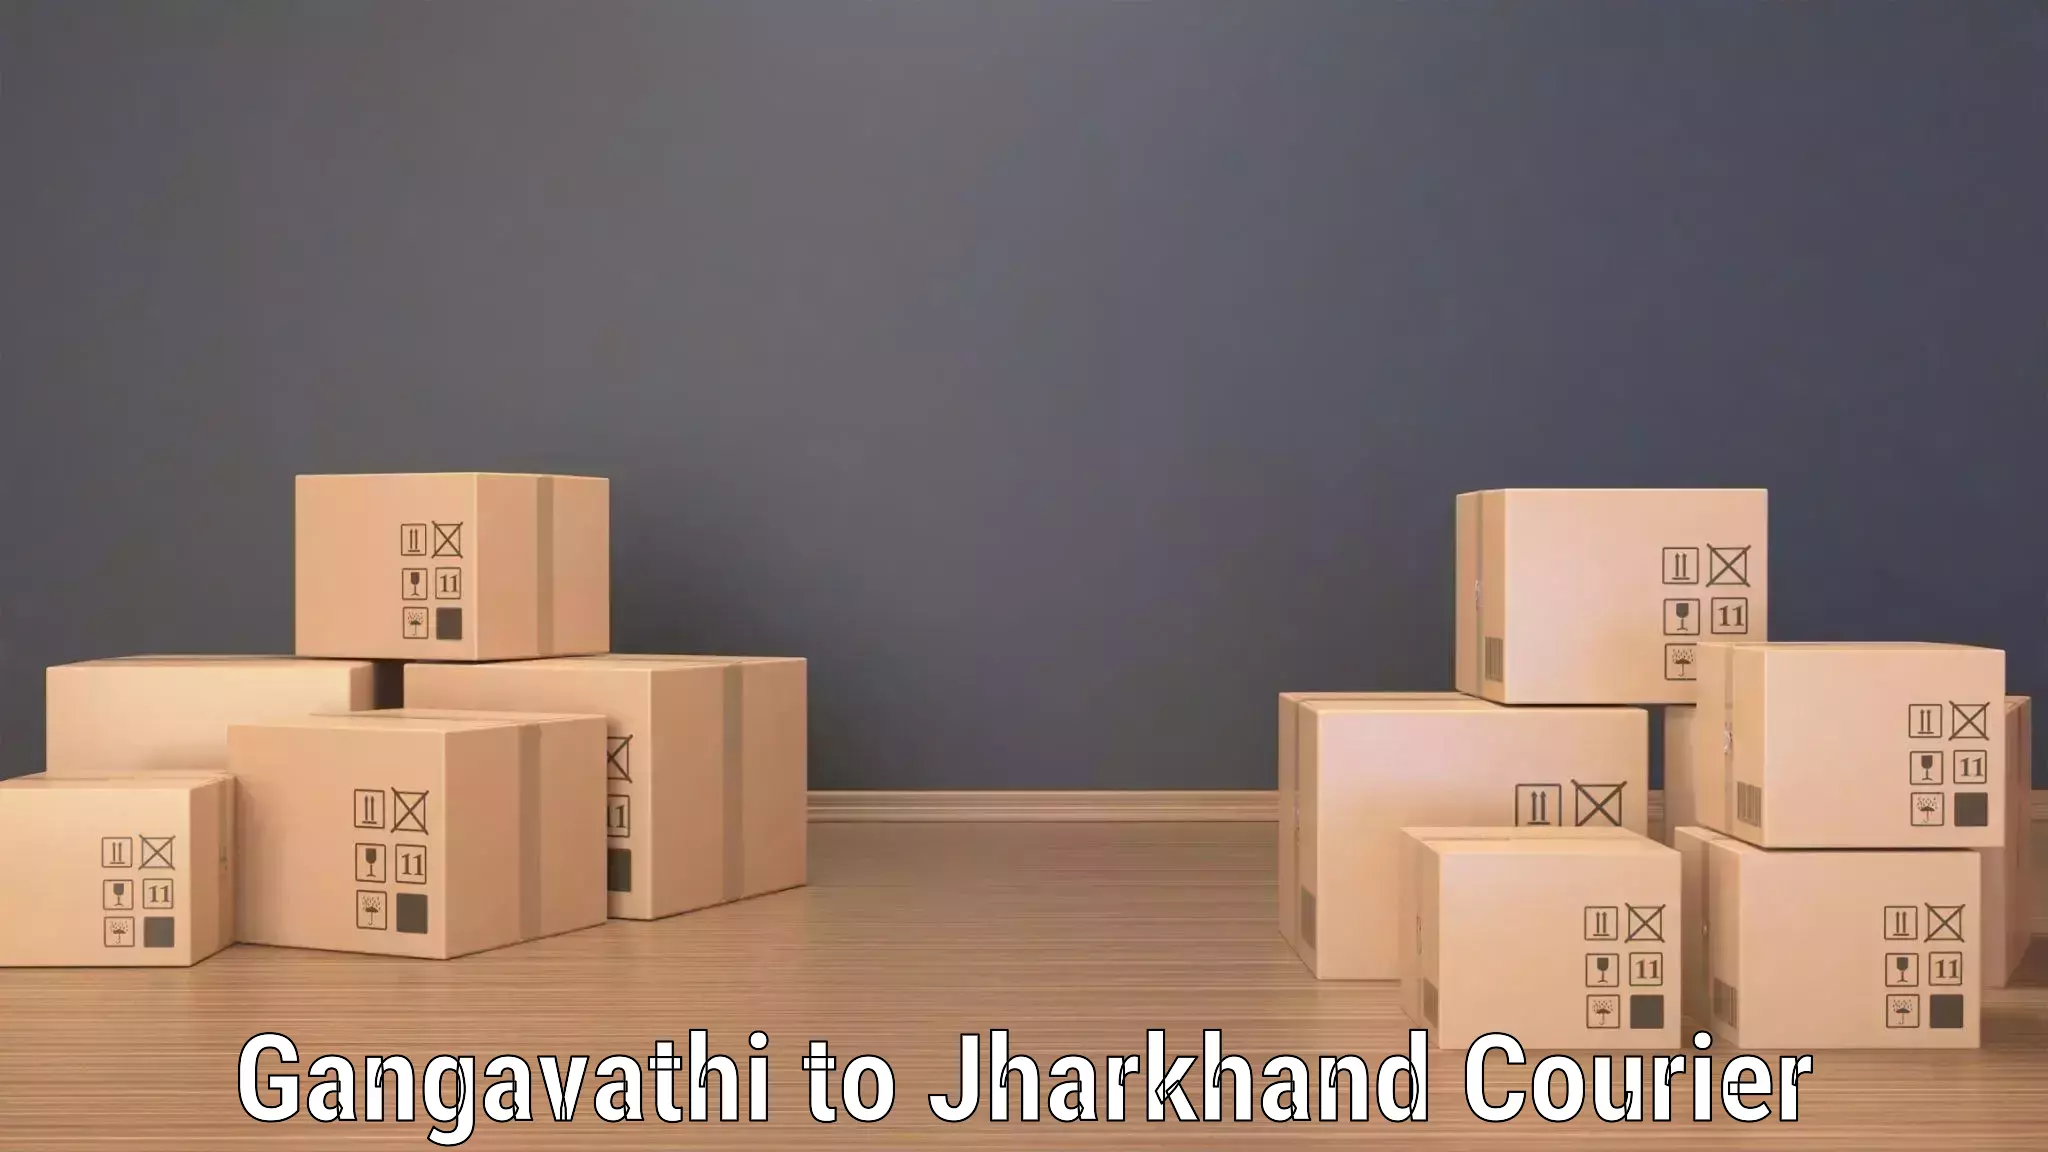 Efficient freight service Gangavathi to Daltonganj